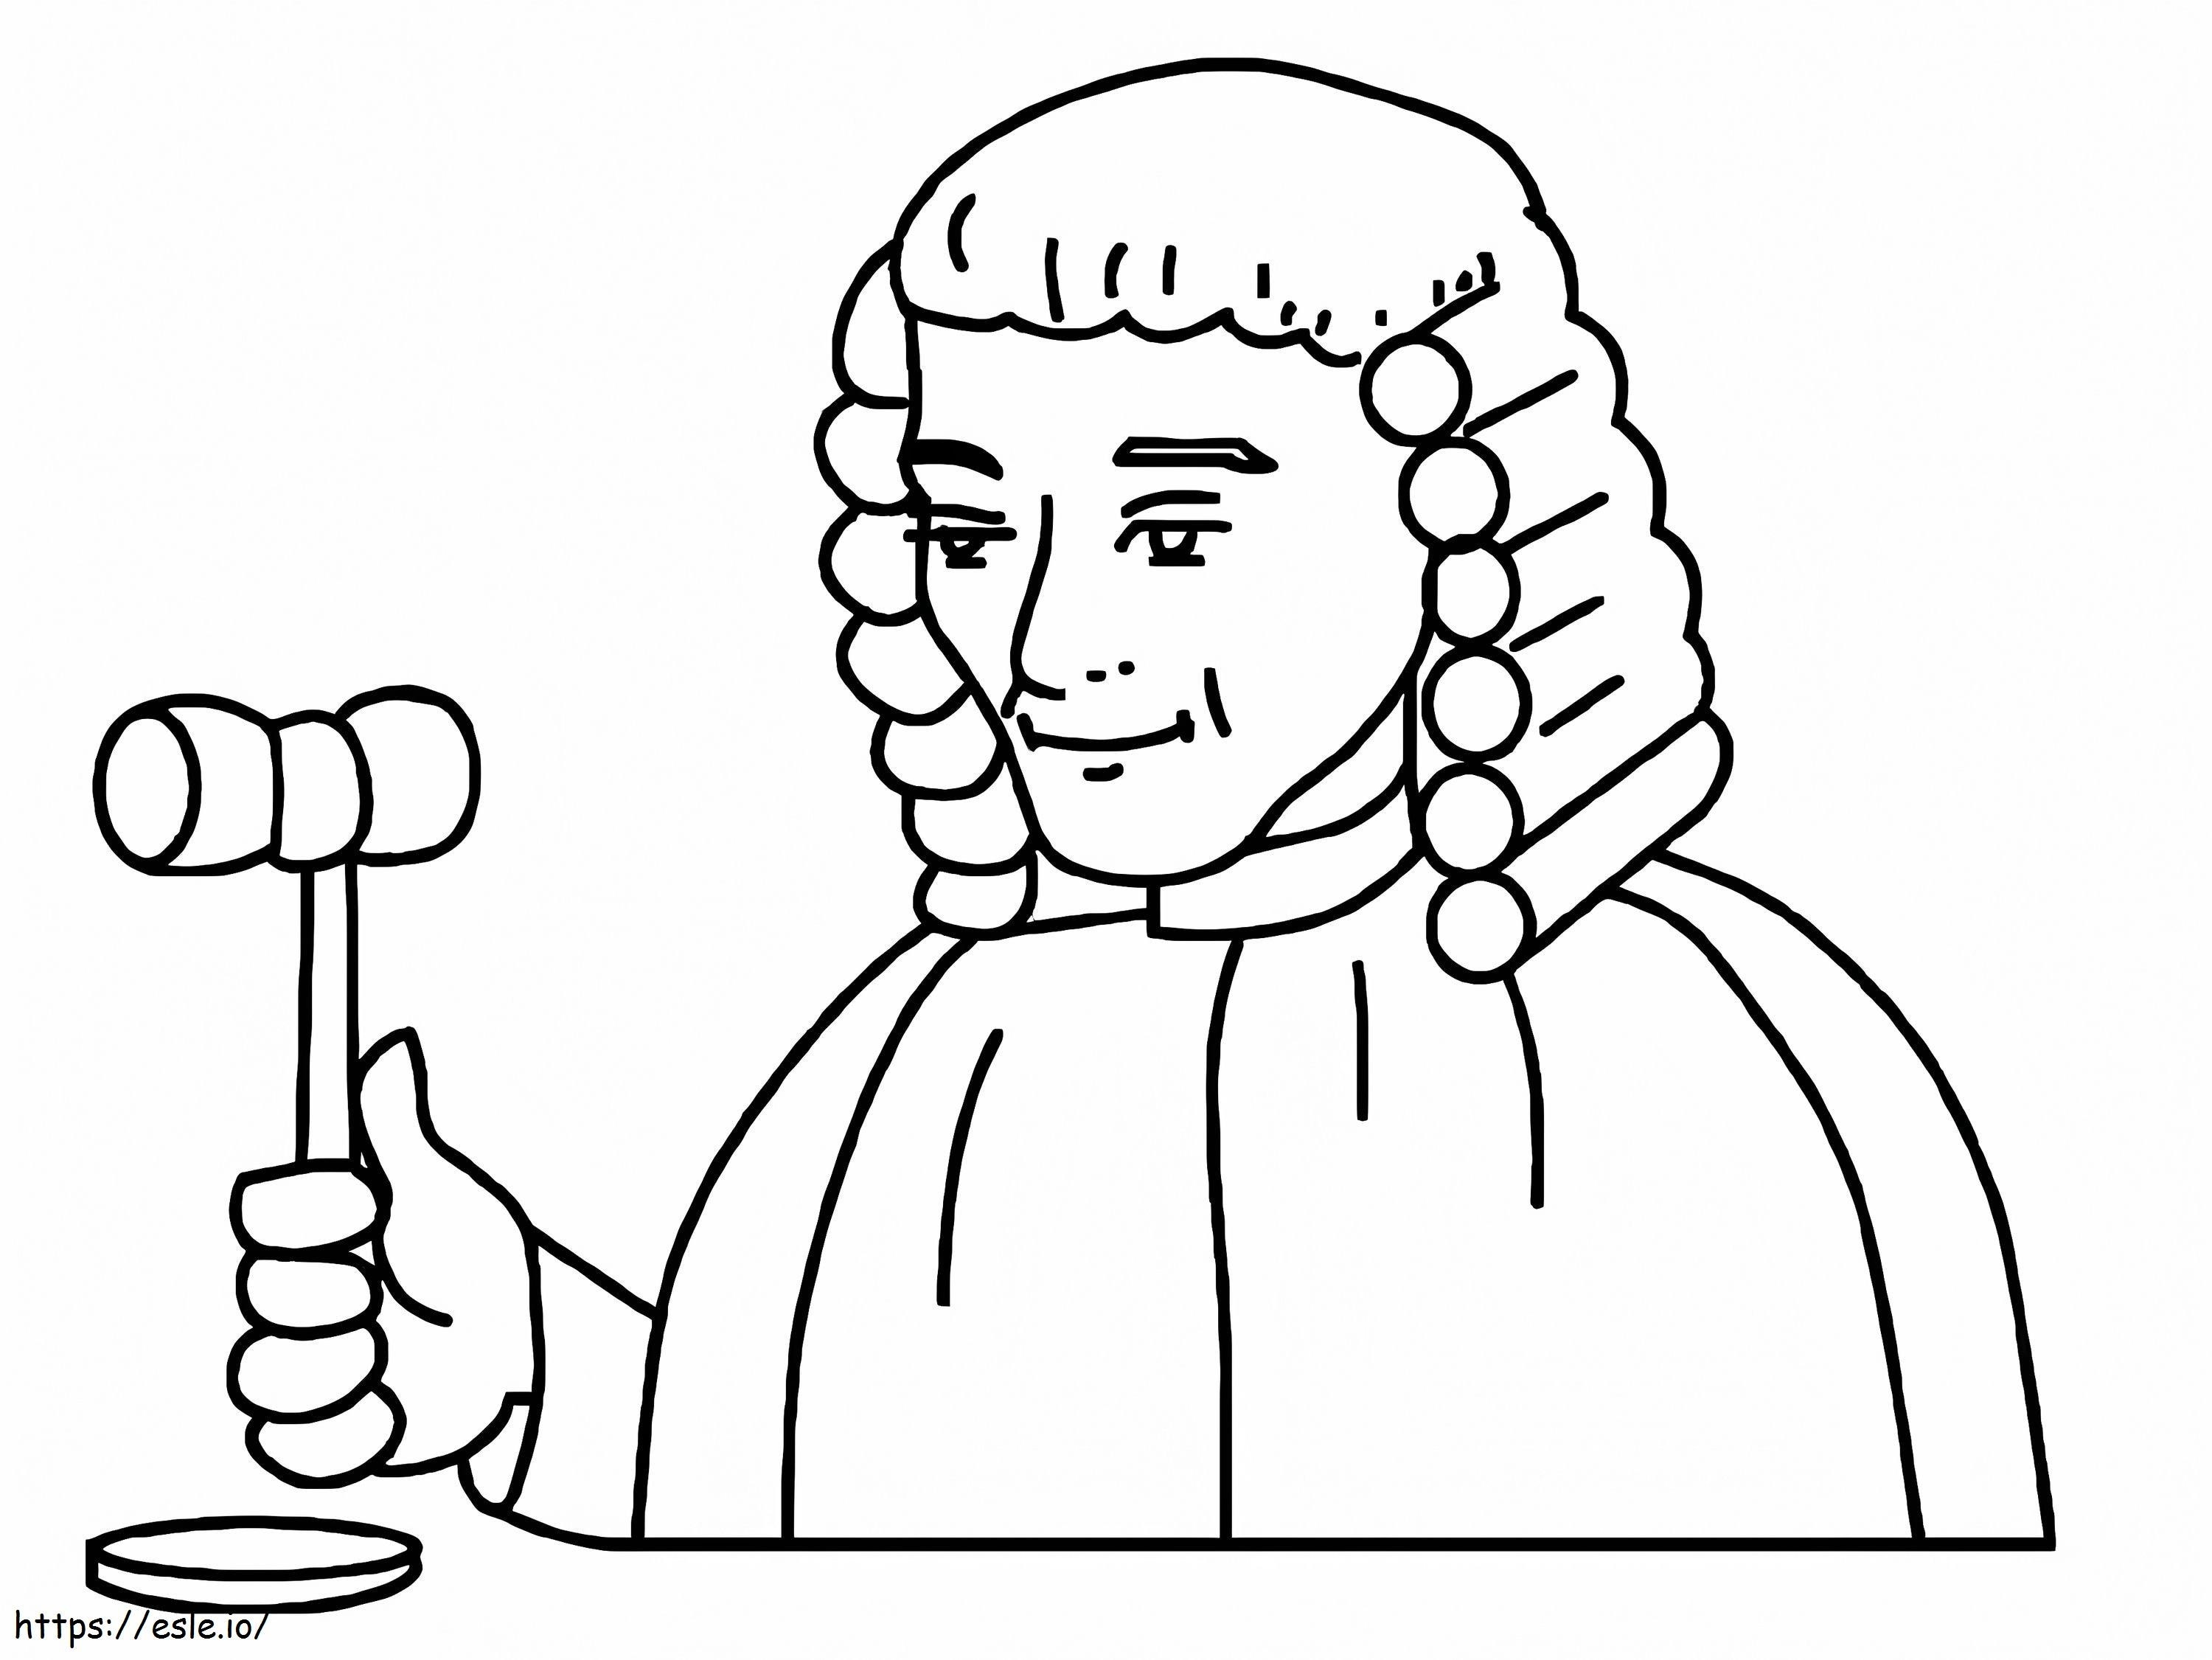 Il giudice sta sorridendo da colorare